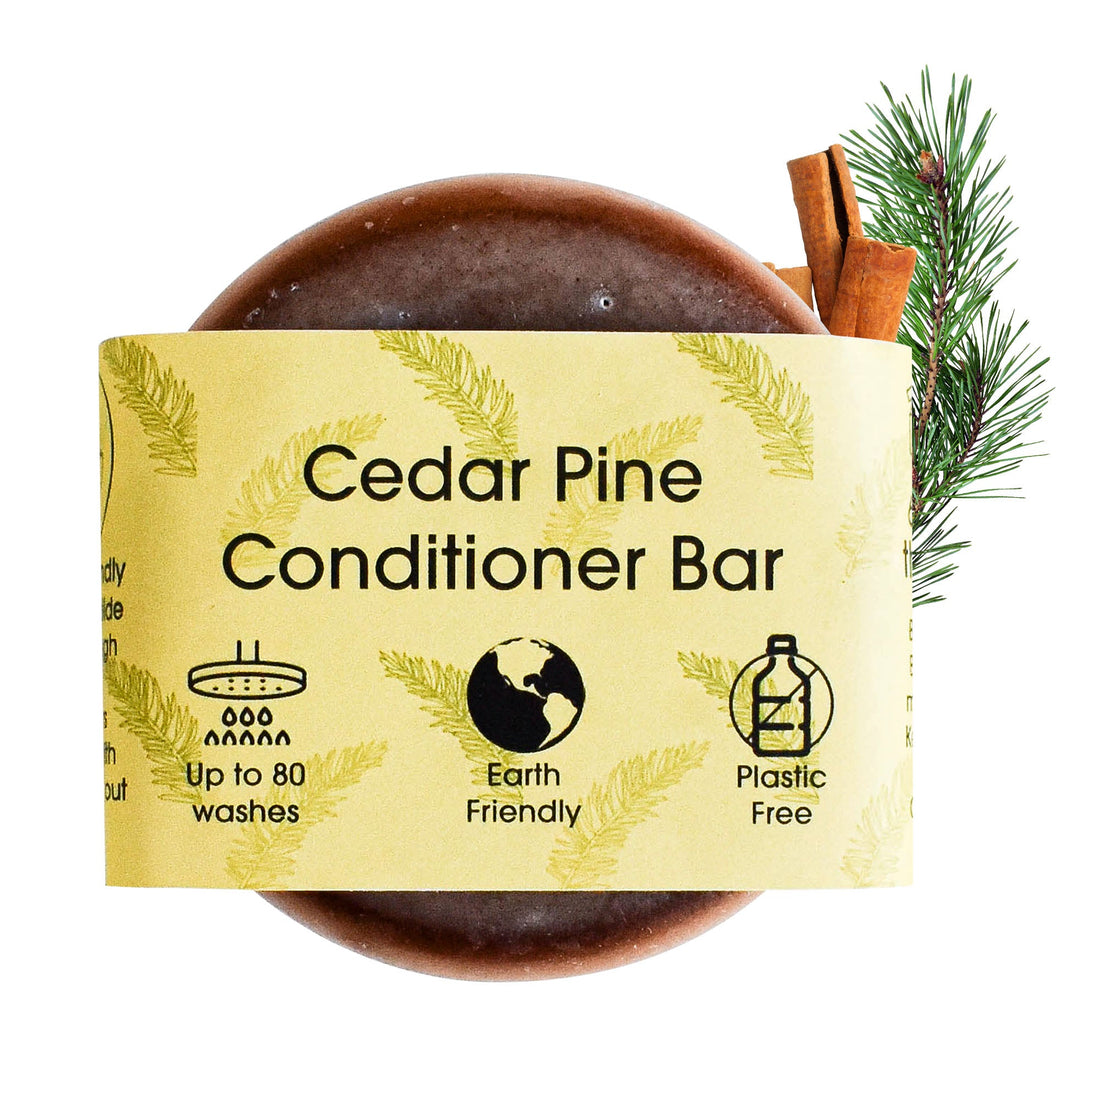 Acondicionador solido Cedro y Piño - The Natural Spa Cosmetic